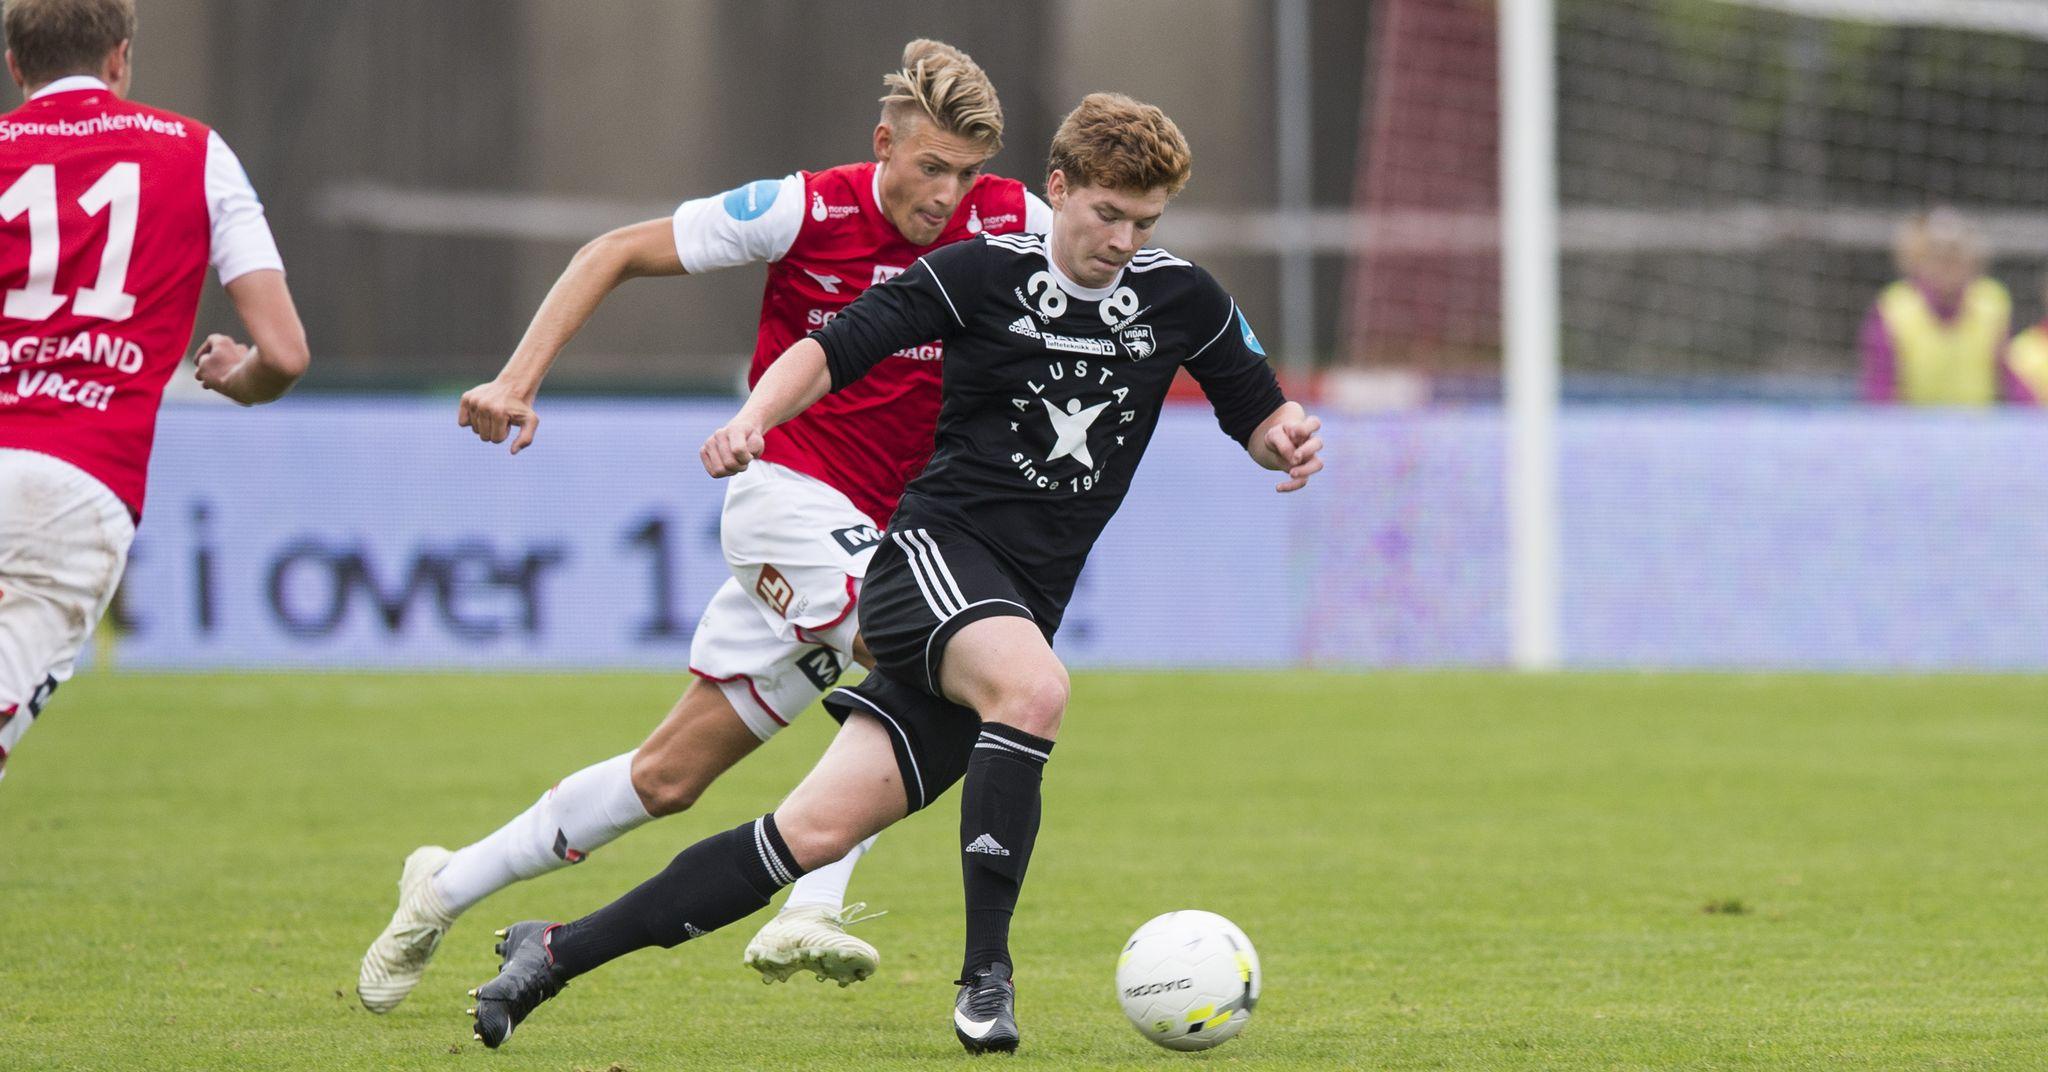 Thomas Klemetsen Jakobsen scoret for Vidar, men det holdt ikke til poeng borte mot Levanger.